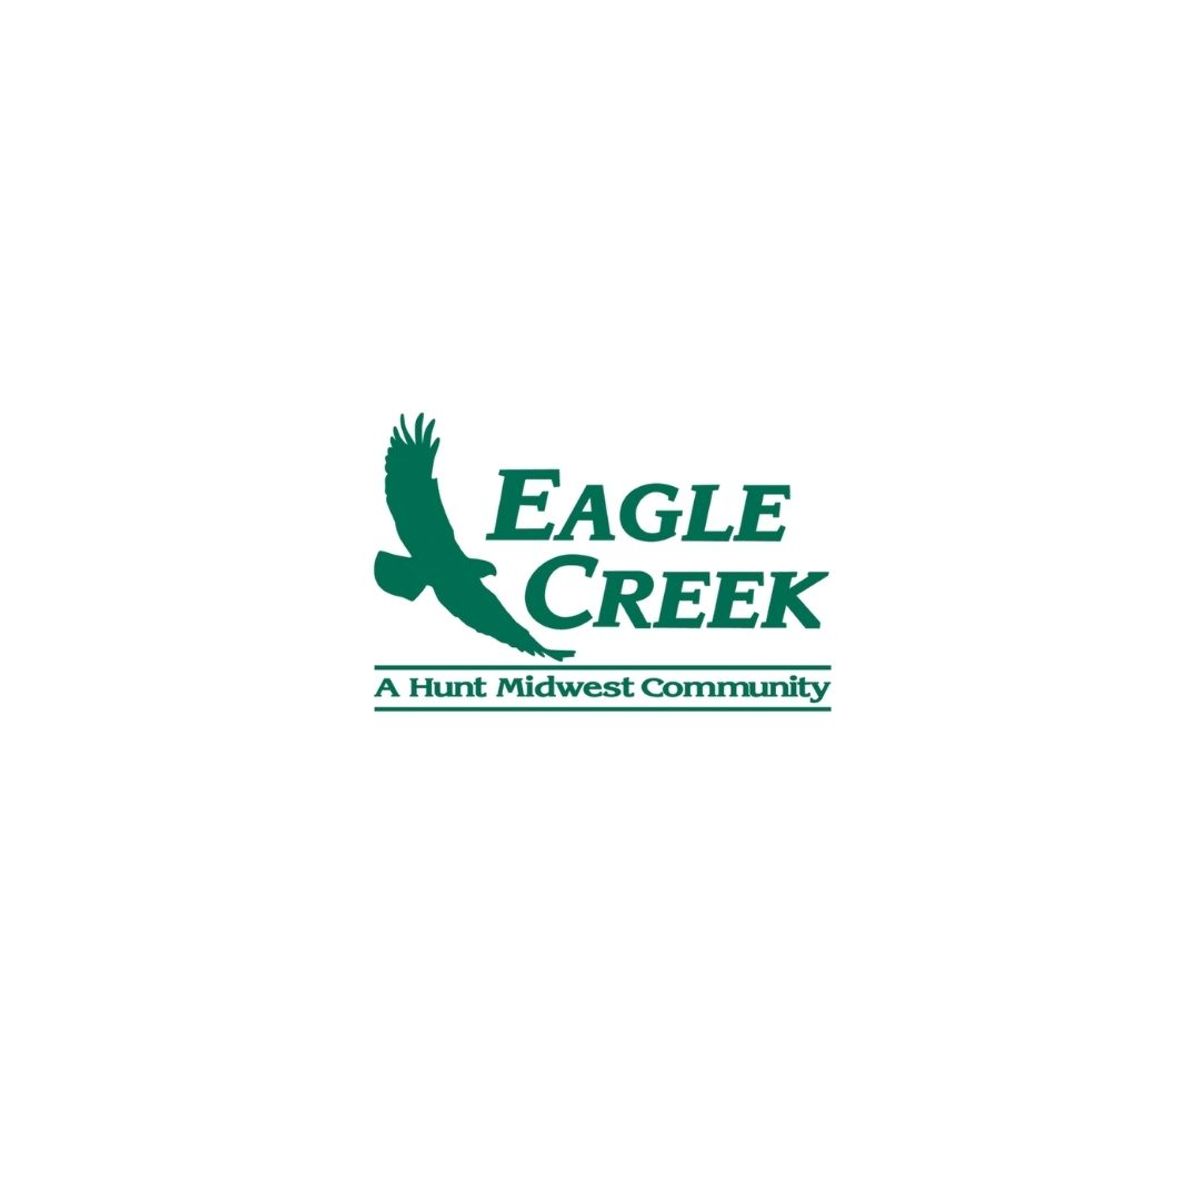 Eagle Creek HOA